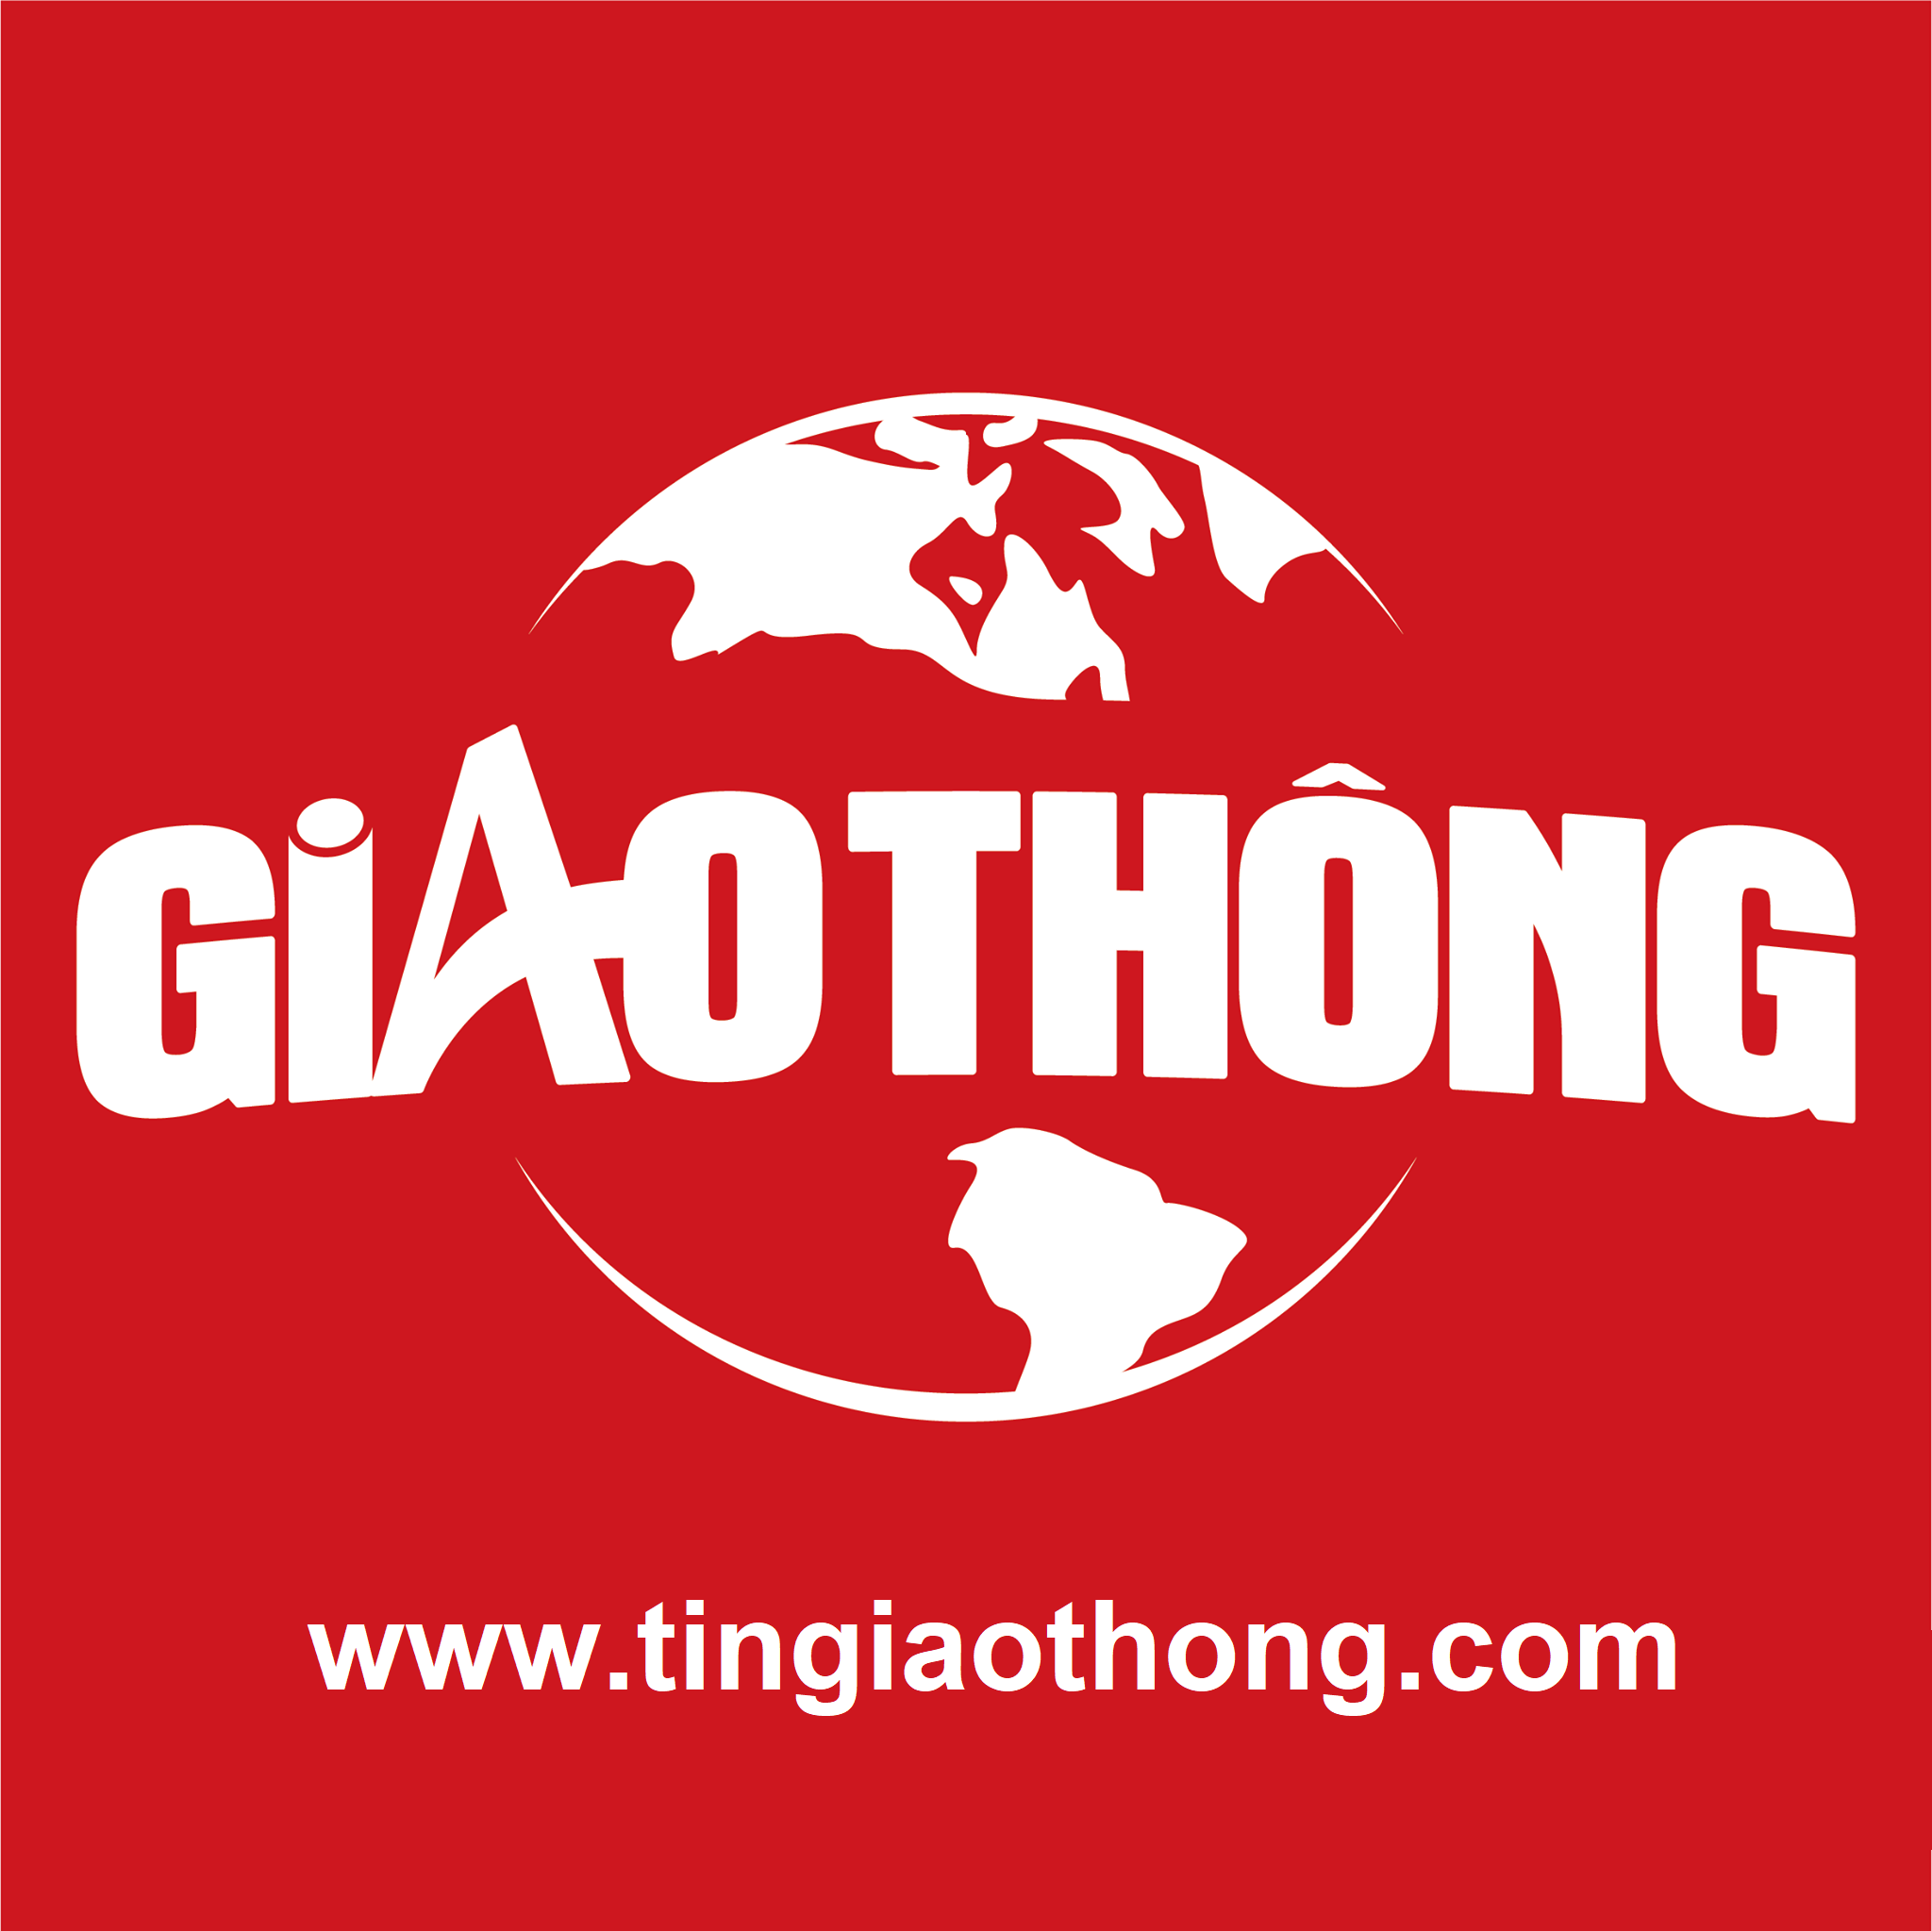 Tingiaothong.com